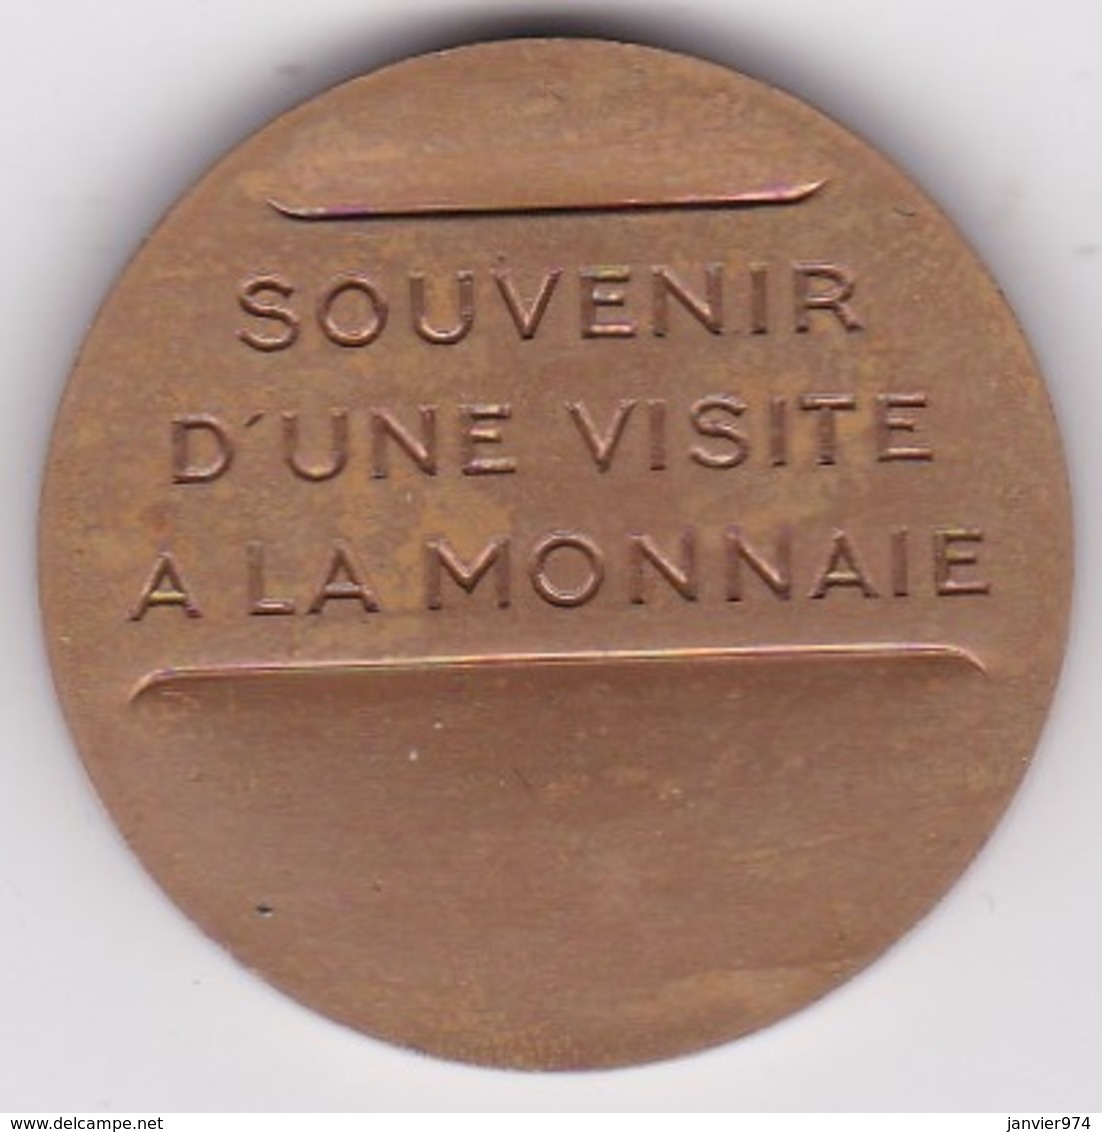 Jeton En Bronze Souvenir D'une Visite à La Monnaie. Paris - Professionals / Firms